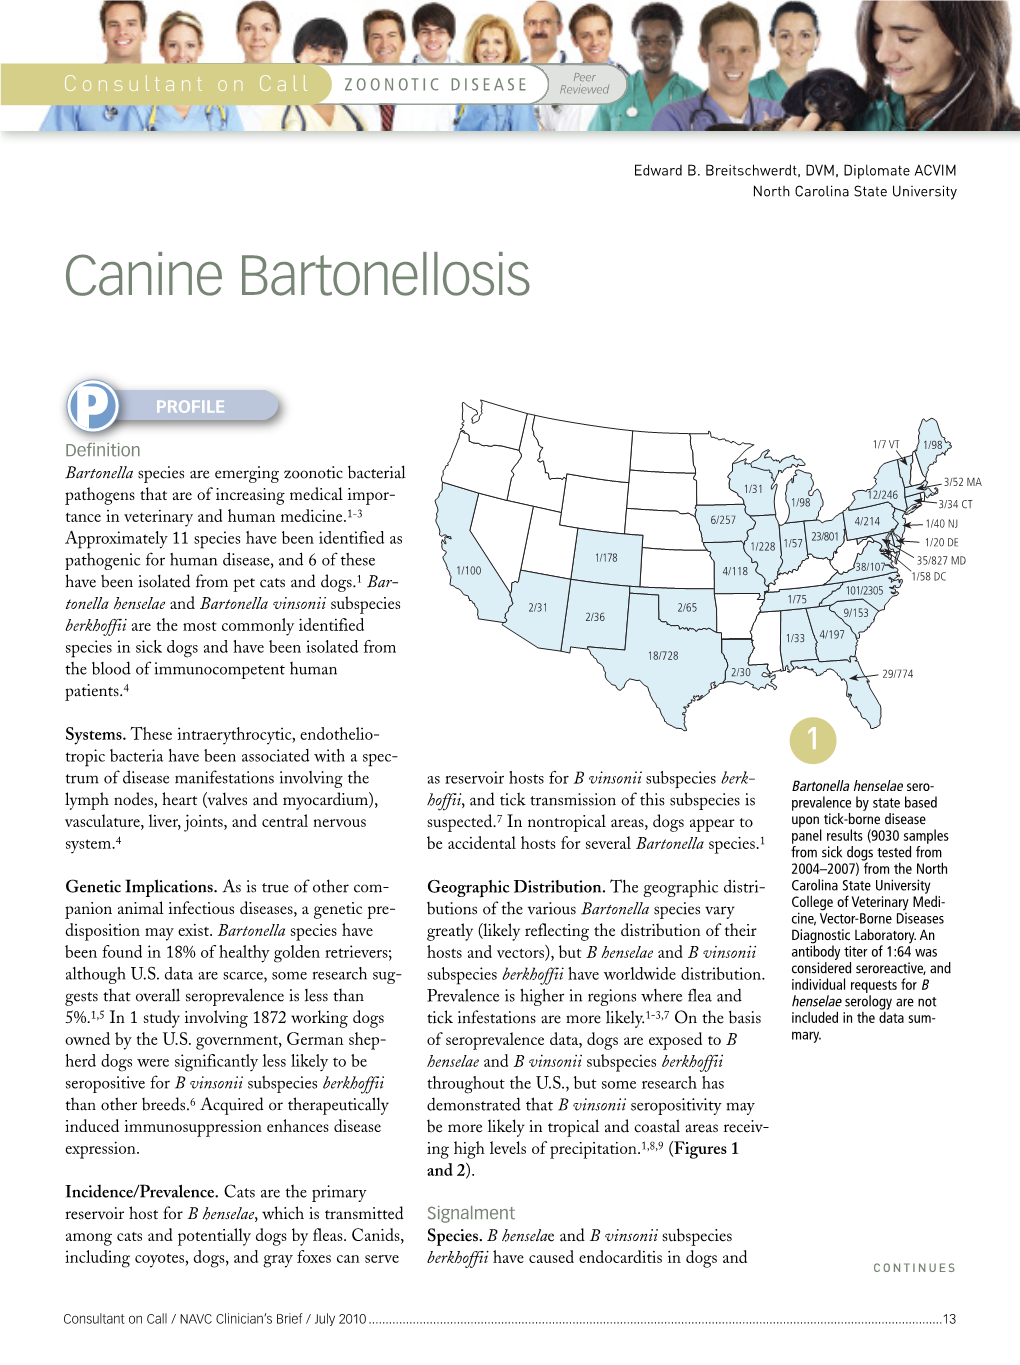 Canine Bartonellosis